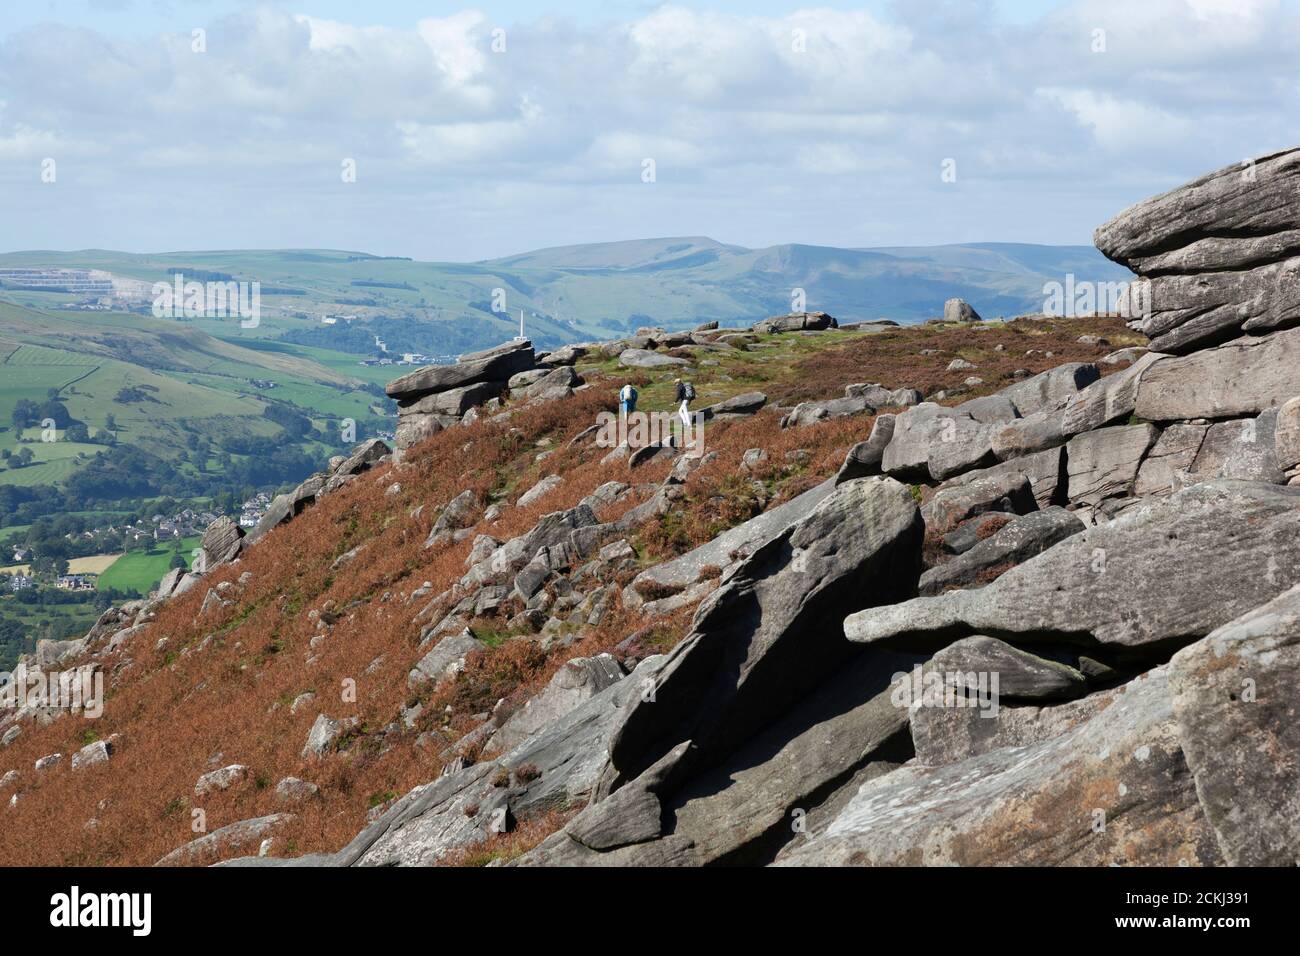 Gli scalatori con zaini camminano lungo la cima di una cresta di pietra erbosa con ampie vedute della campagna della Hope Valley nel Peak District, Regno Unito Foto Stock